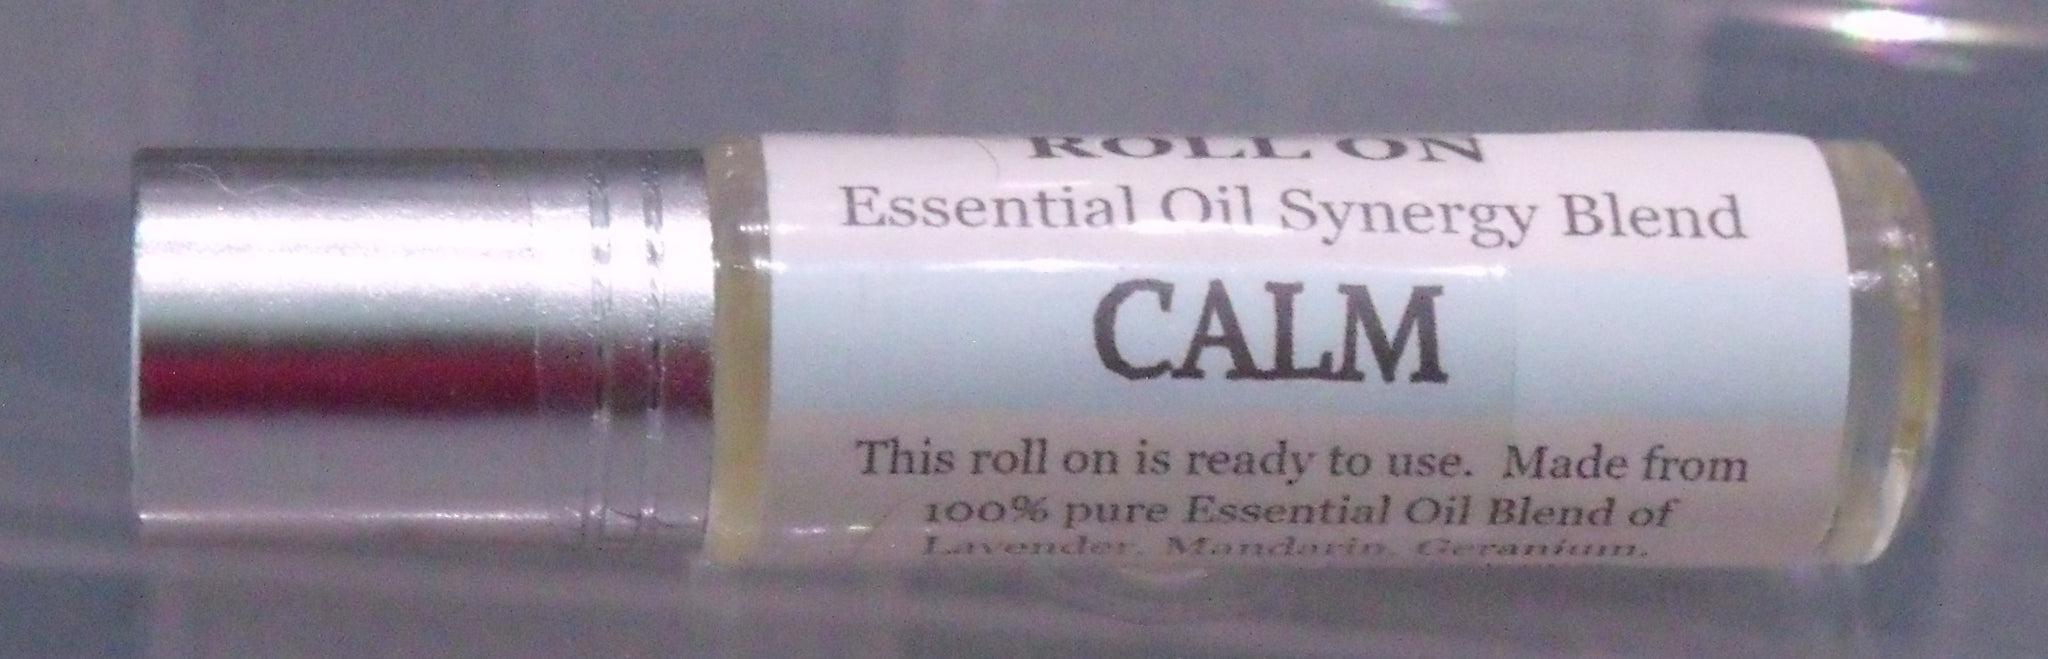 Calm Roll On Synergy Blend